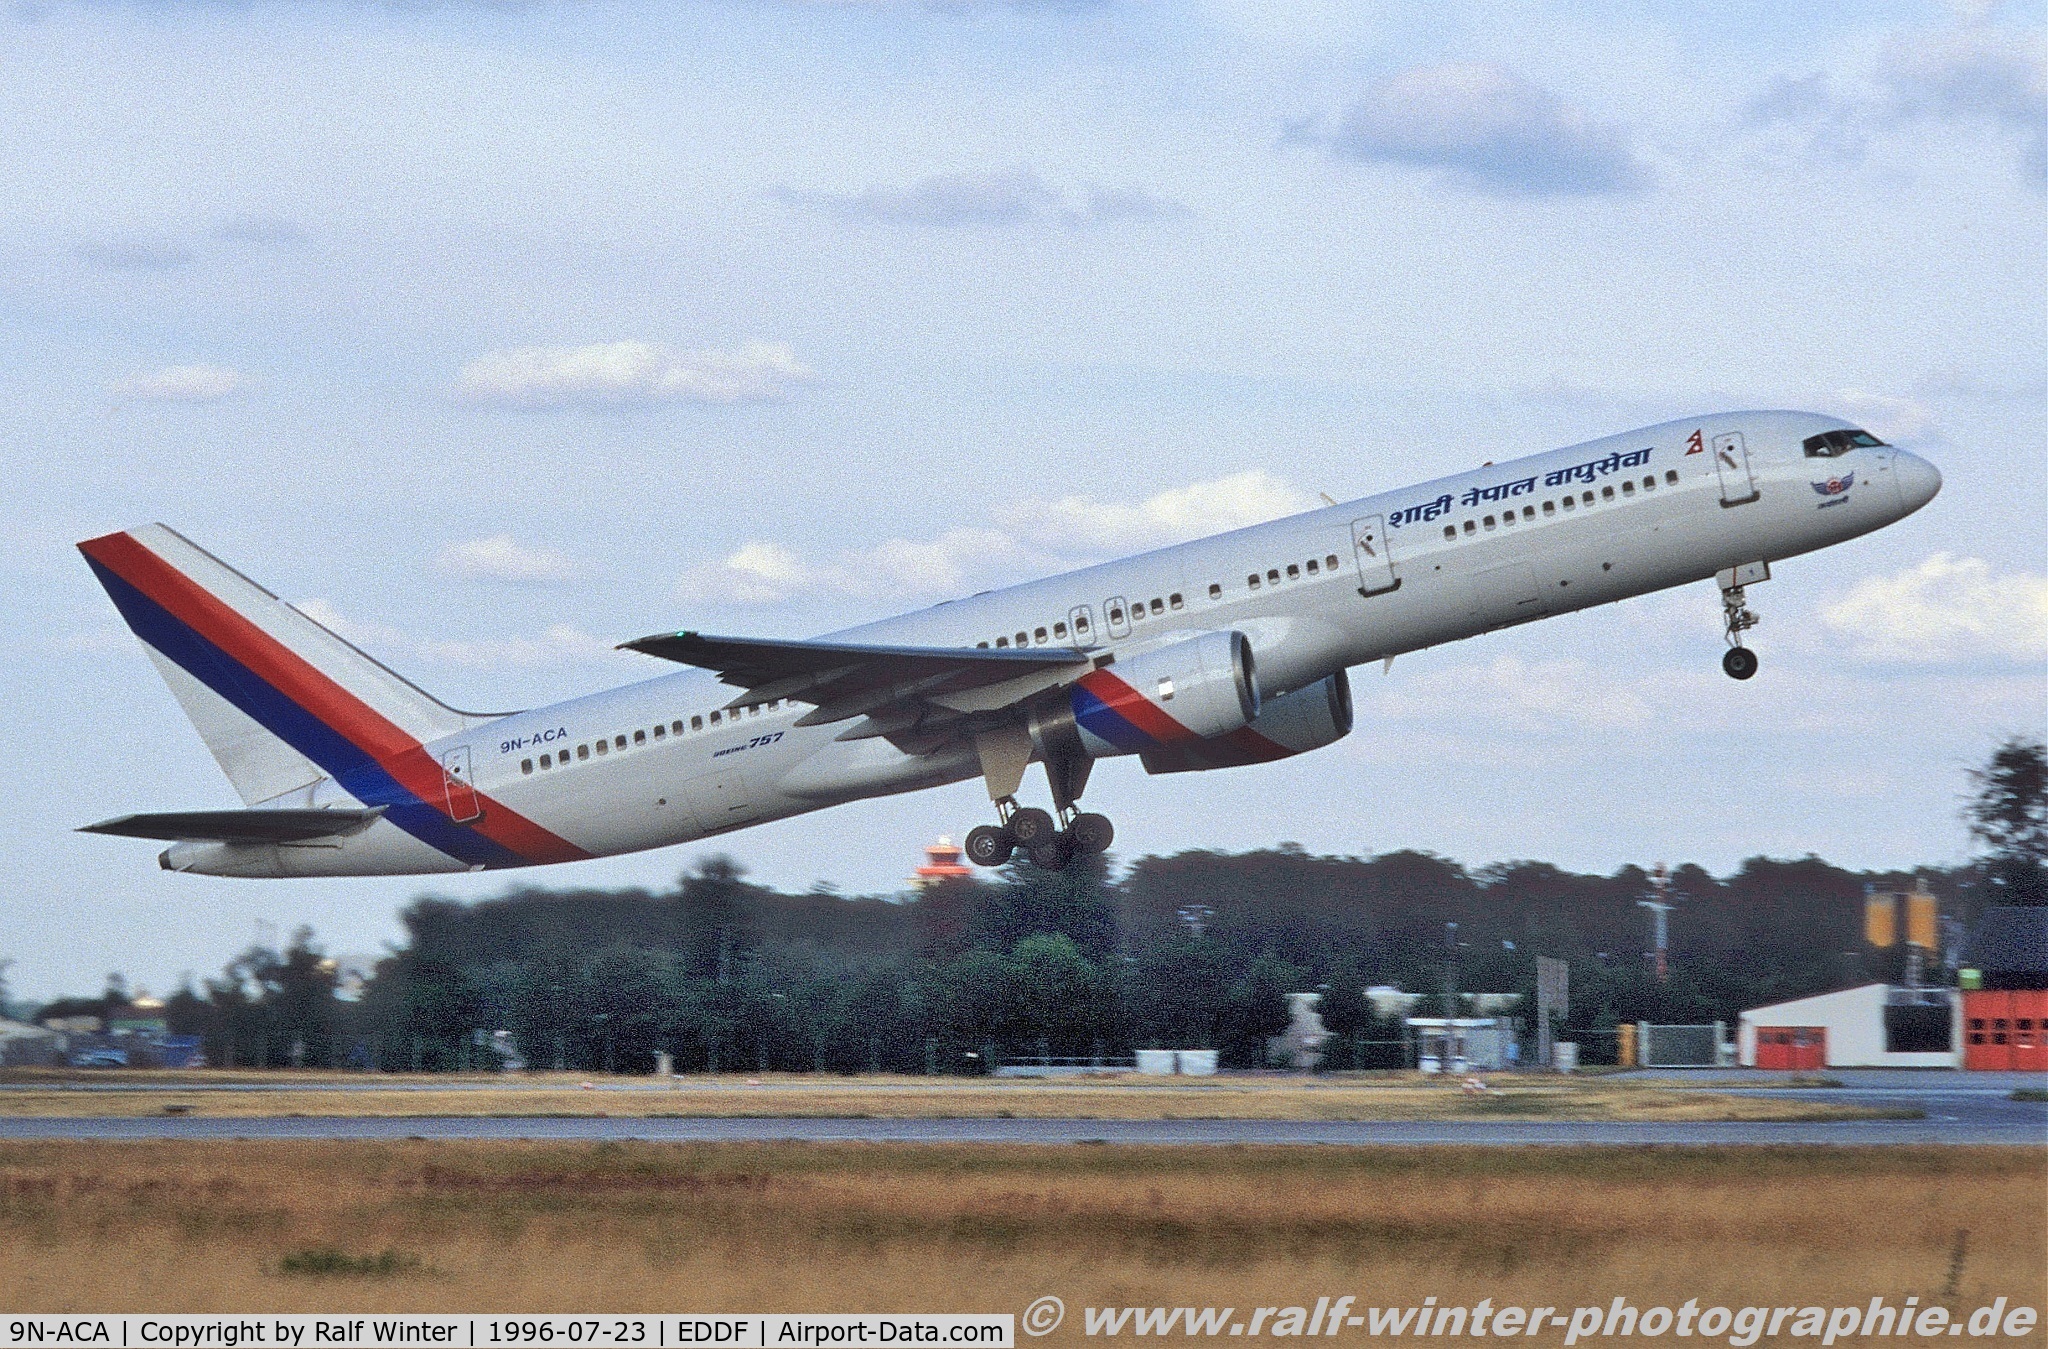 9N-ACA, 1987 Boeing 757-2F8 C/N 23850, Boeing 757-2F8 - Nepal Airlines - 23850 - 9N-ACA - 23.07.1996 - FR